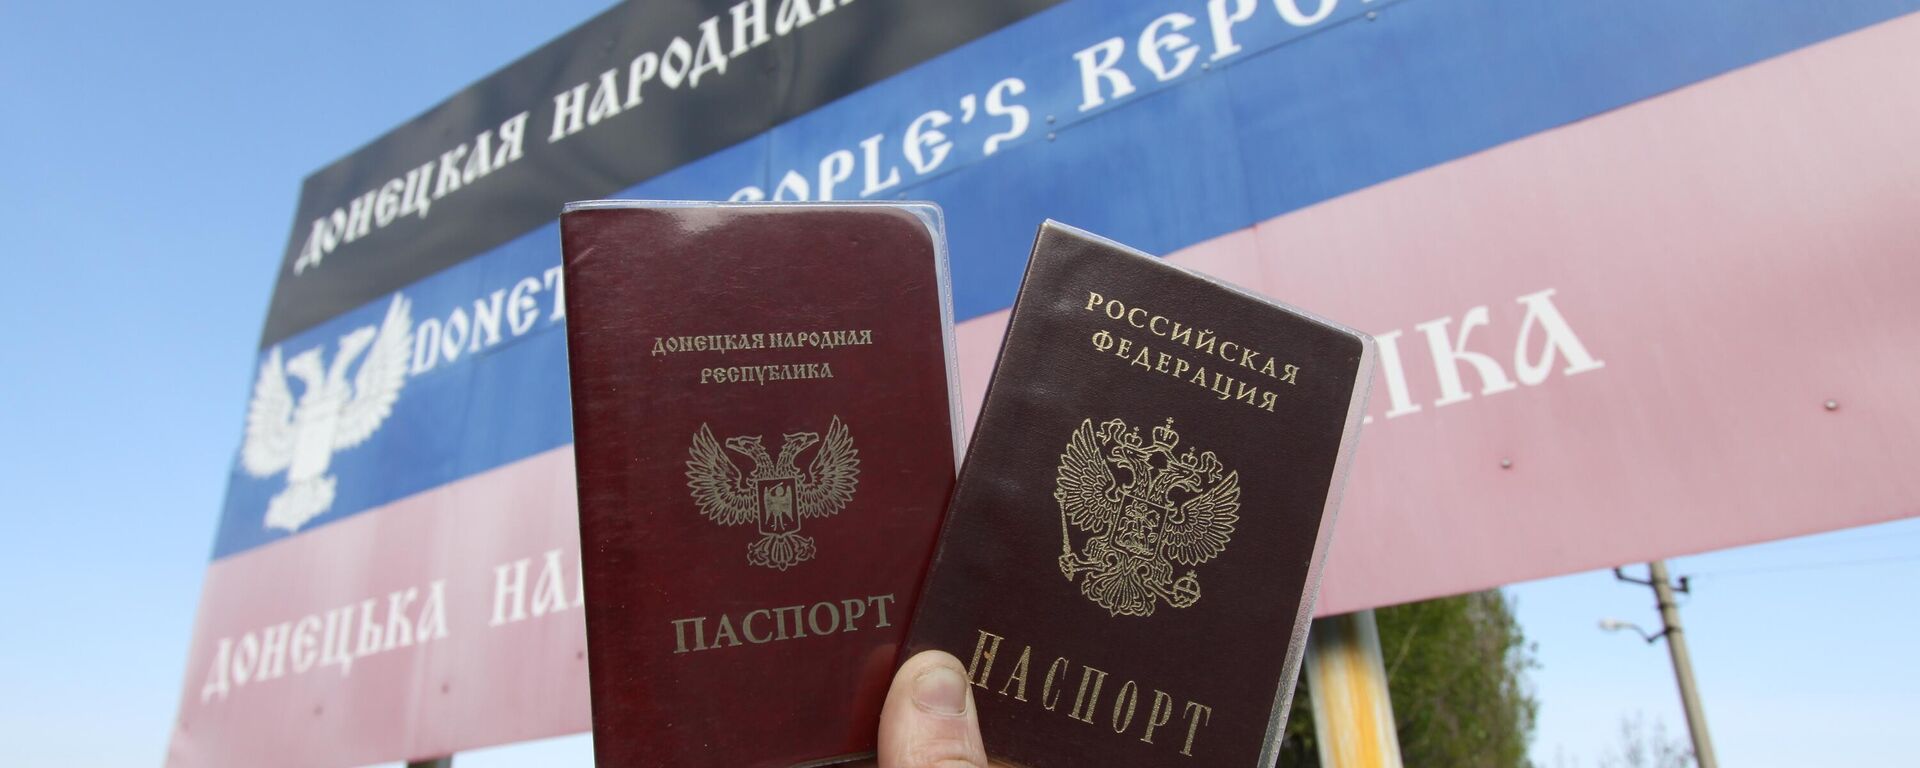 Pasaportes de los ciudadanos de Donetsk y Rusia - Sputnik Mundo, 1920, 23.09.2022